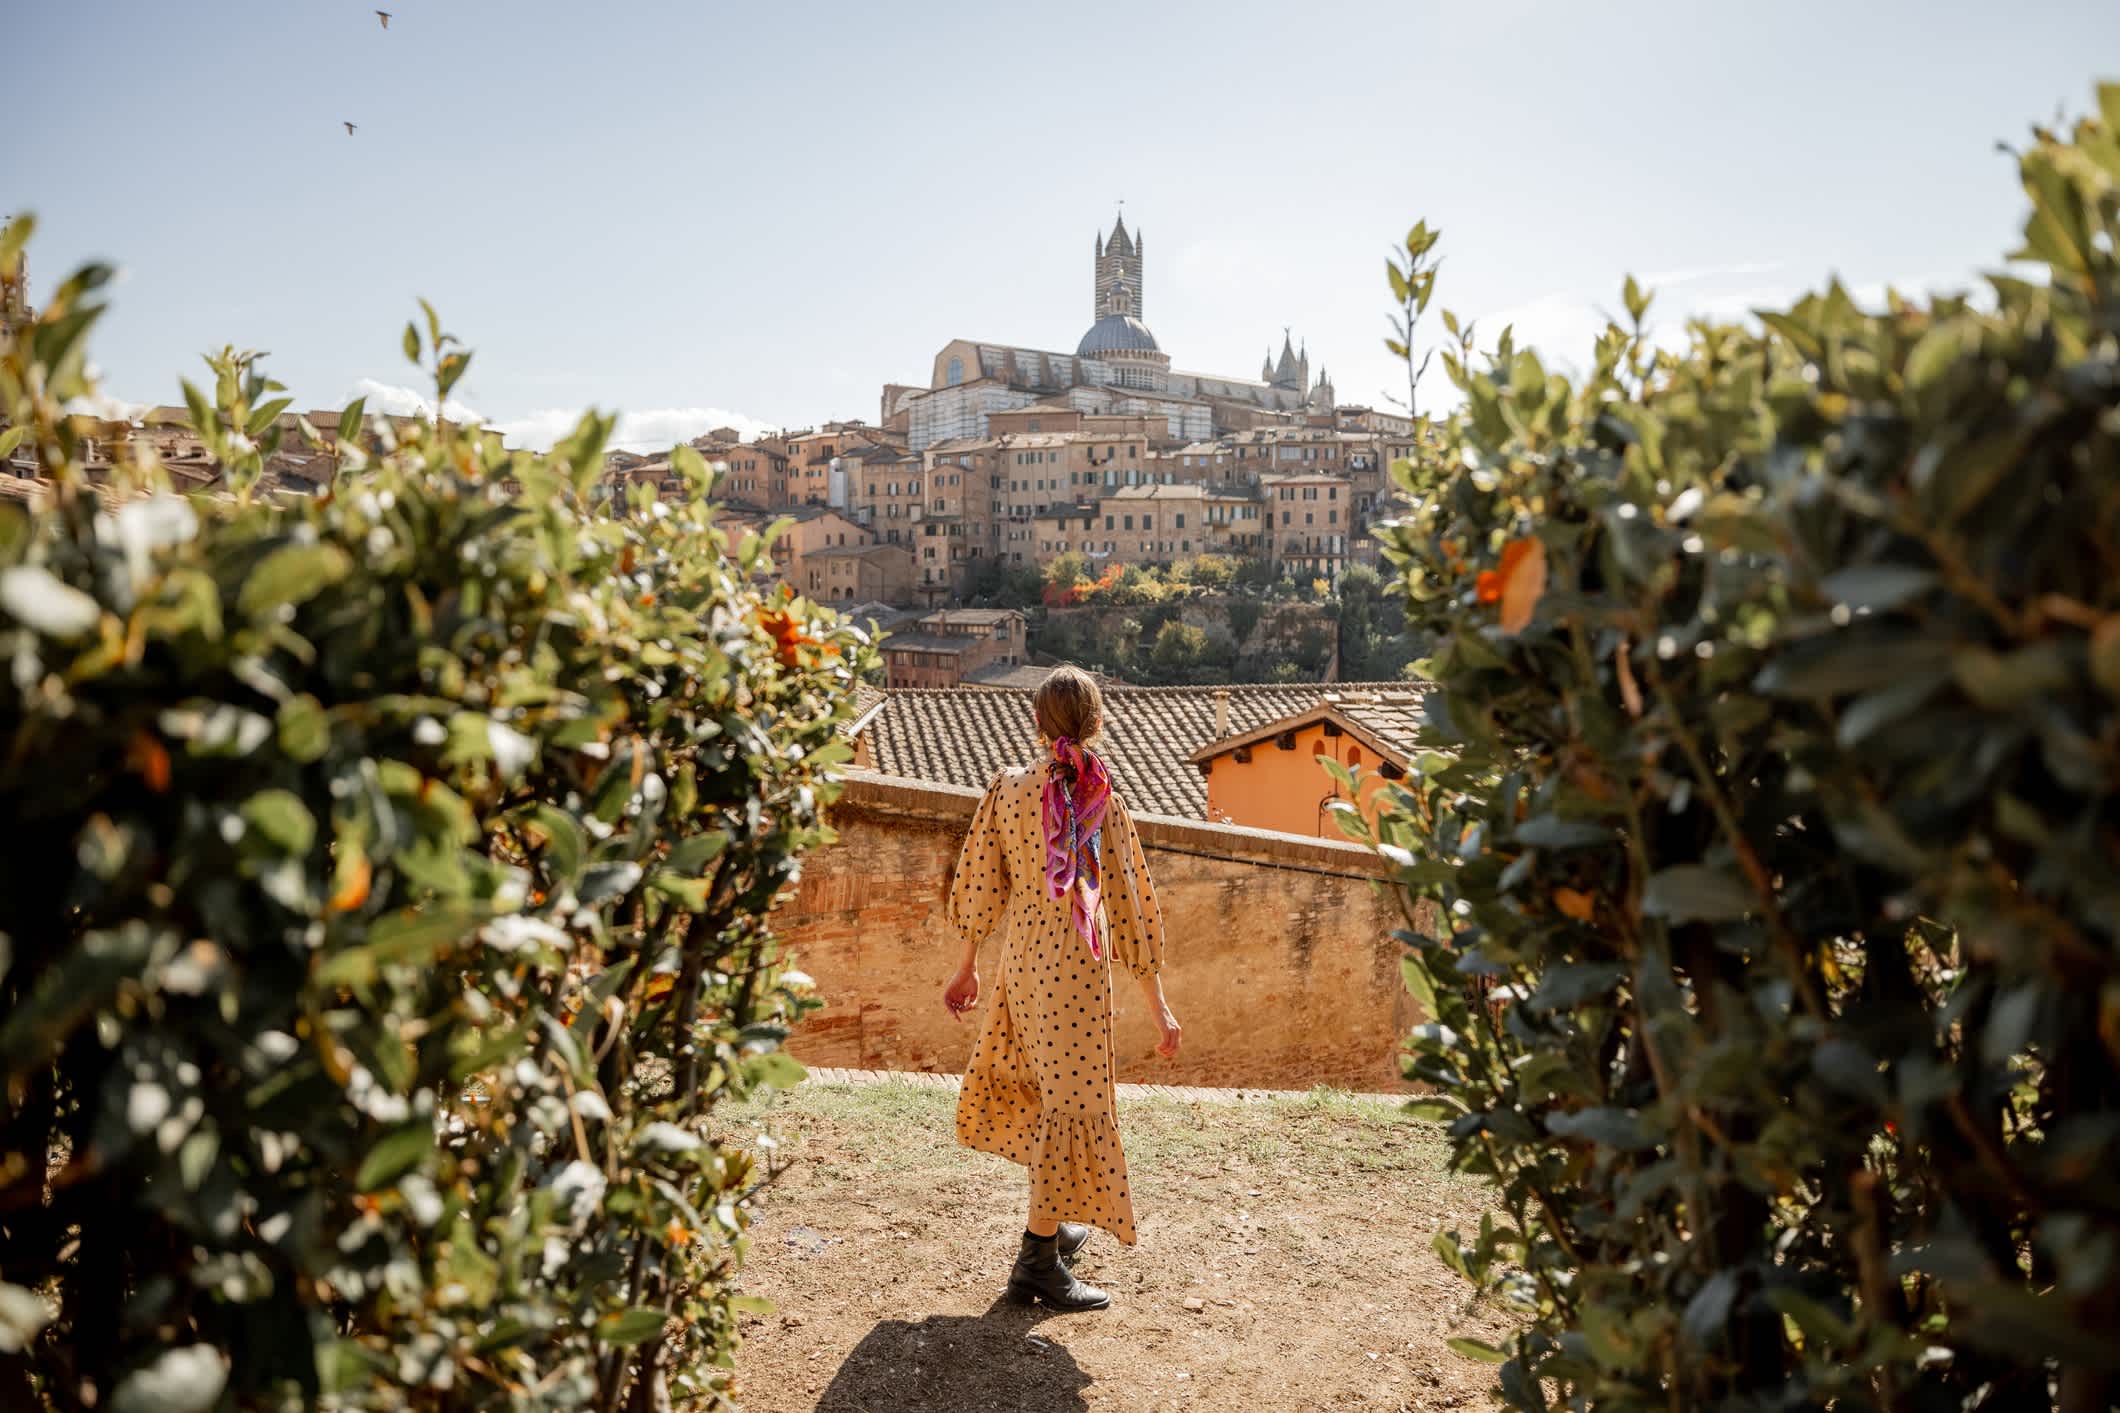 Eine Frau mit der Altstadt von Siena im Hintergrund, Toskana, Italien

